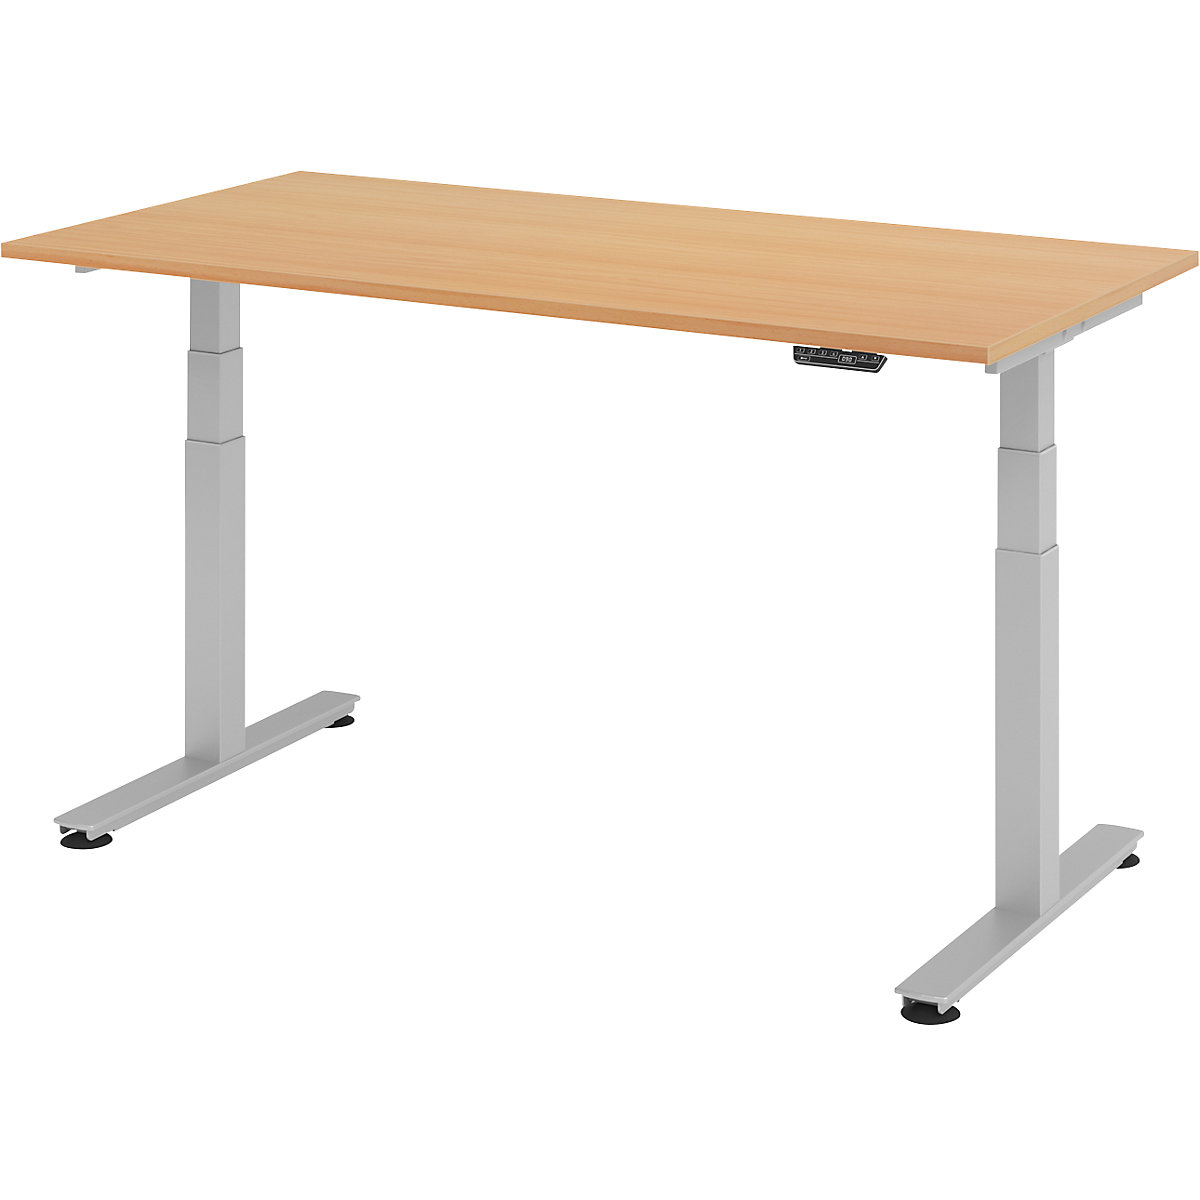 Stôl na písanie v stoji, elektricky výškovo prestaviteľný UPLINER-2.0, podstavec s nohou v tvare T, šírka 1200 mm, vzor buk-11